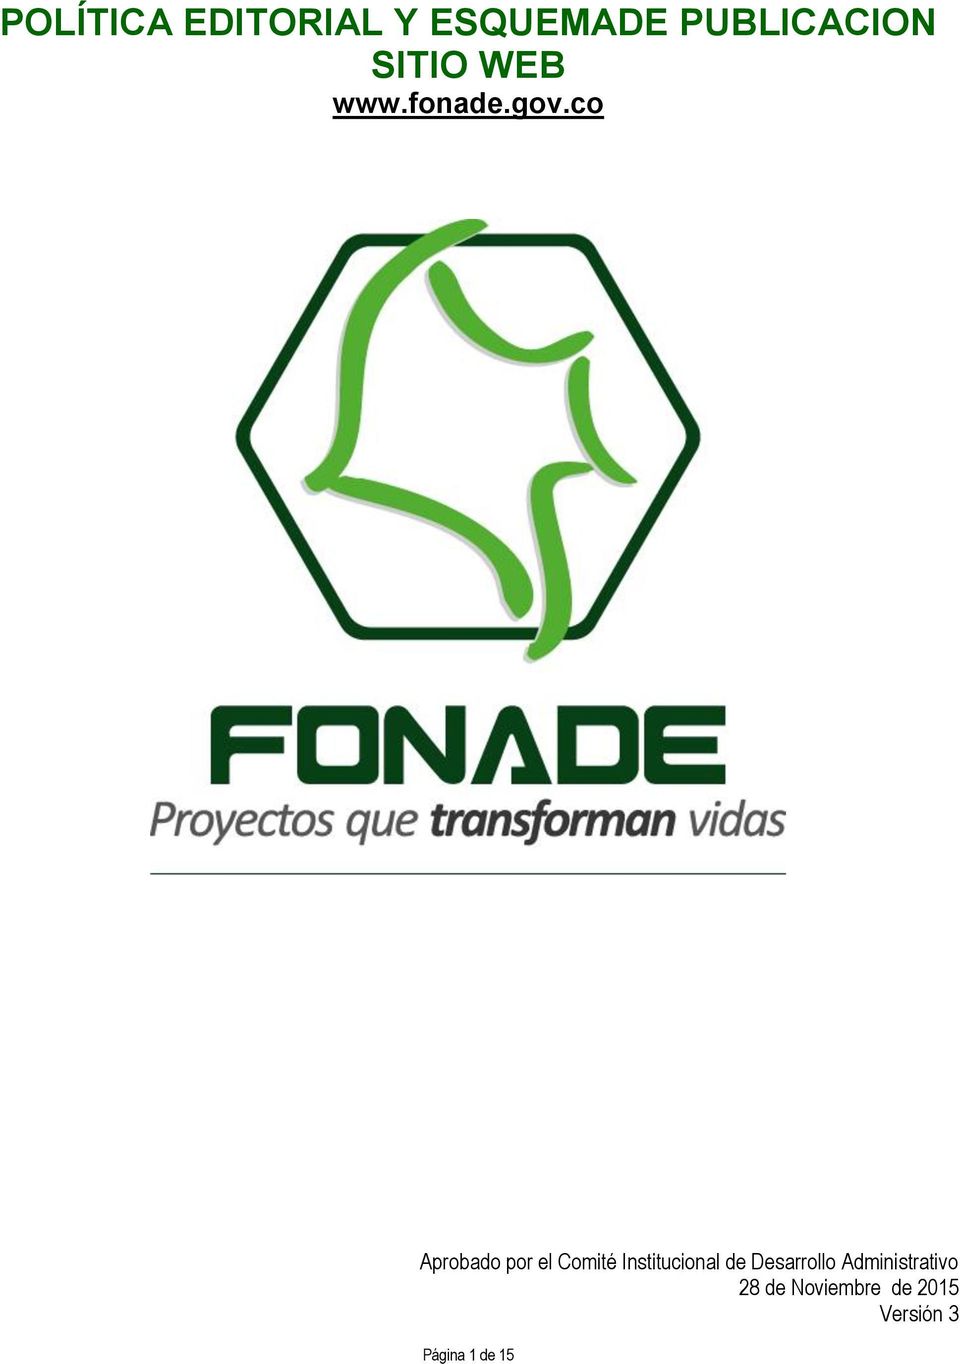 SITIO WEB www.fonade.